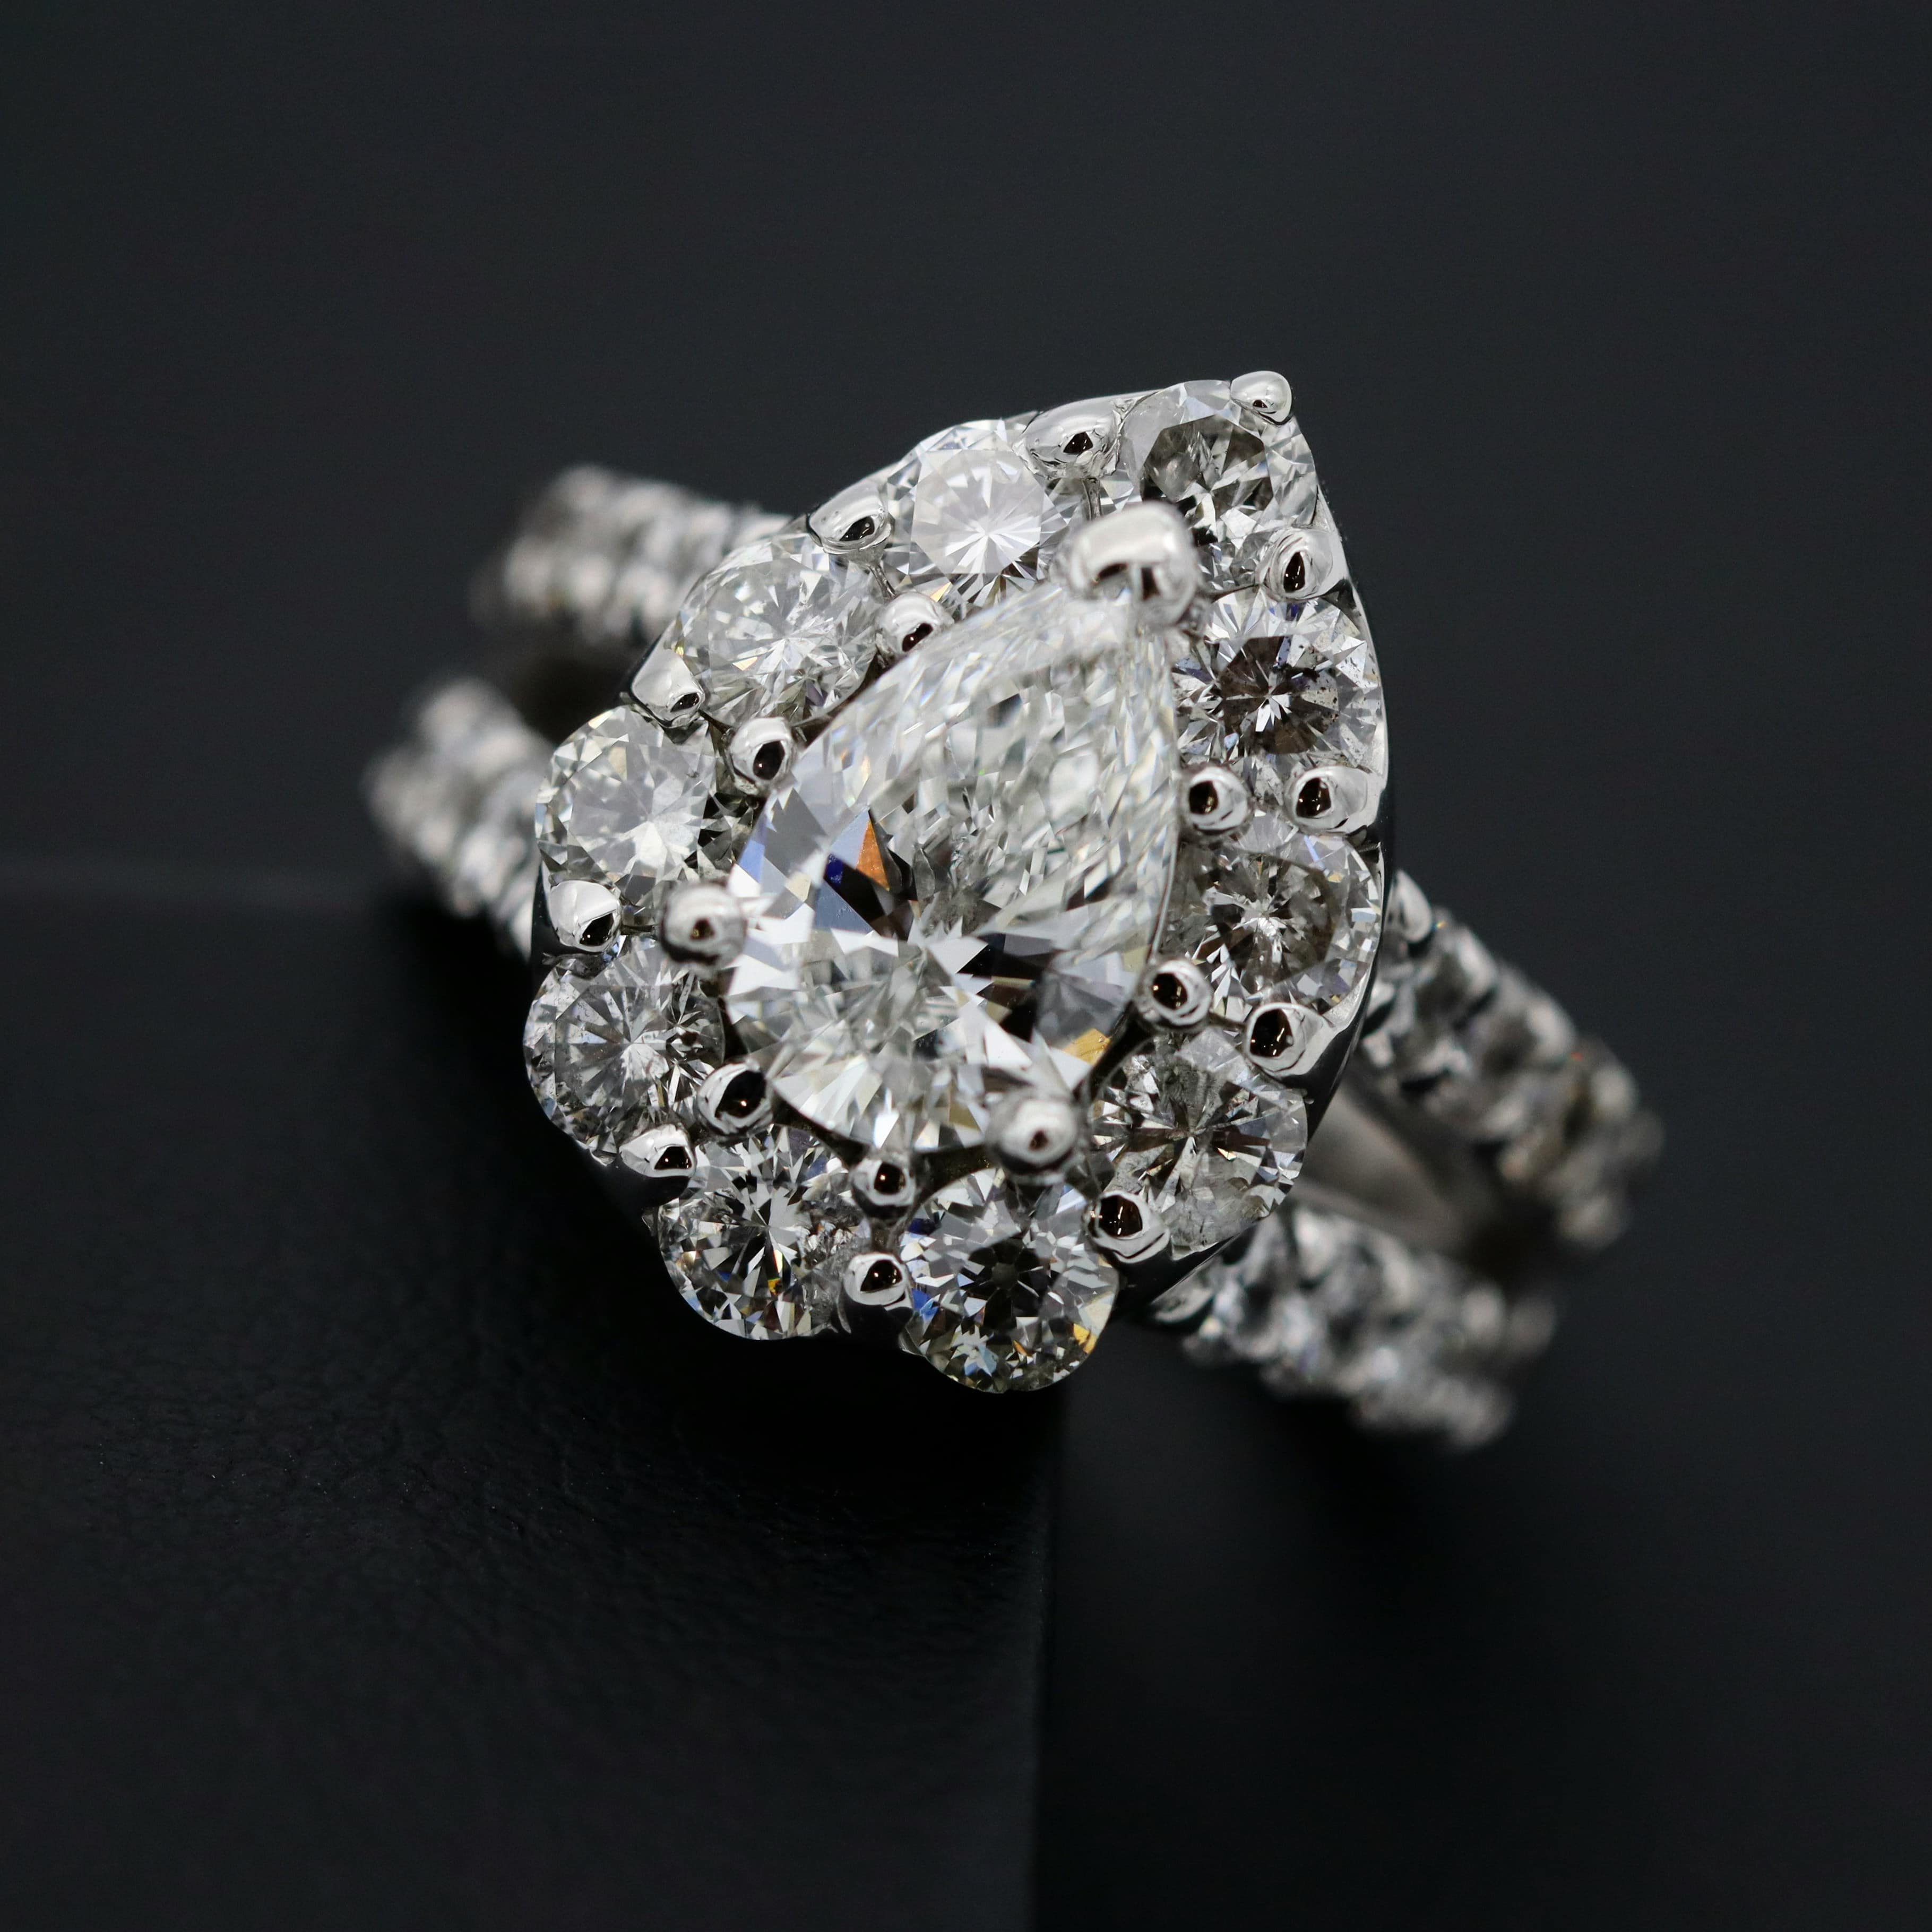 Image showing diamond ring